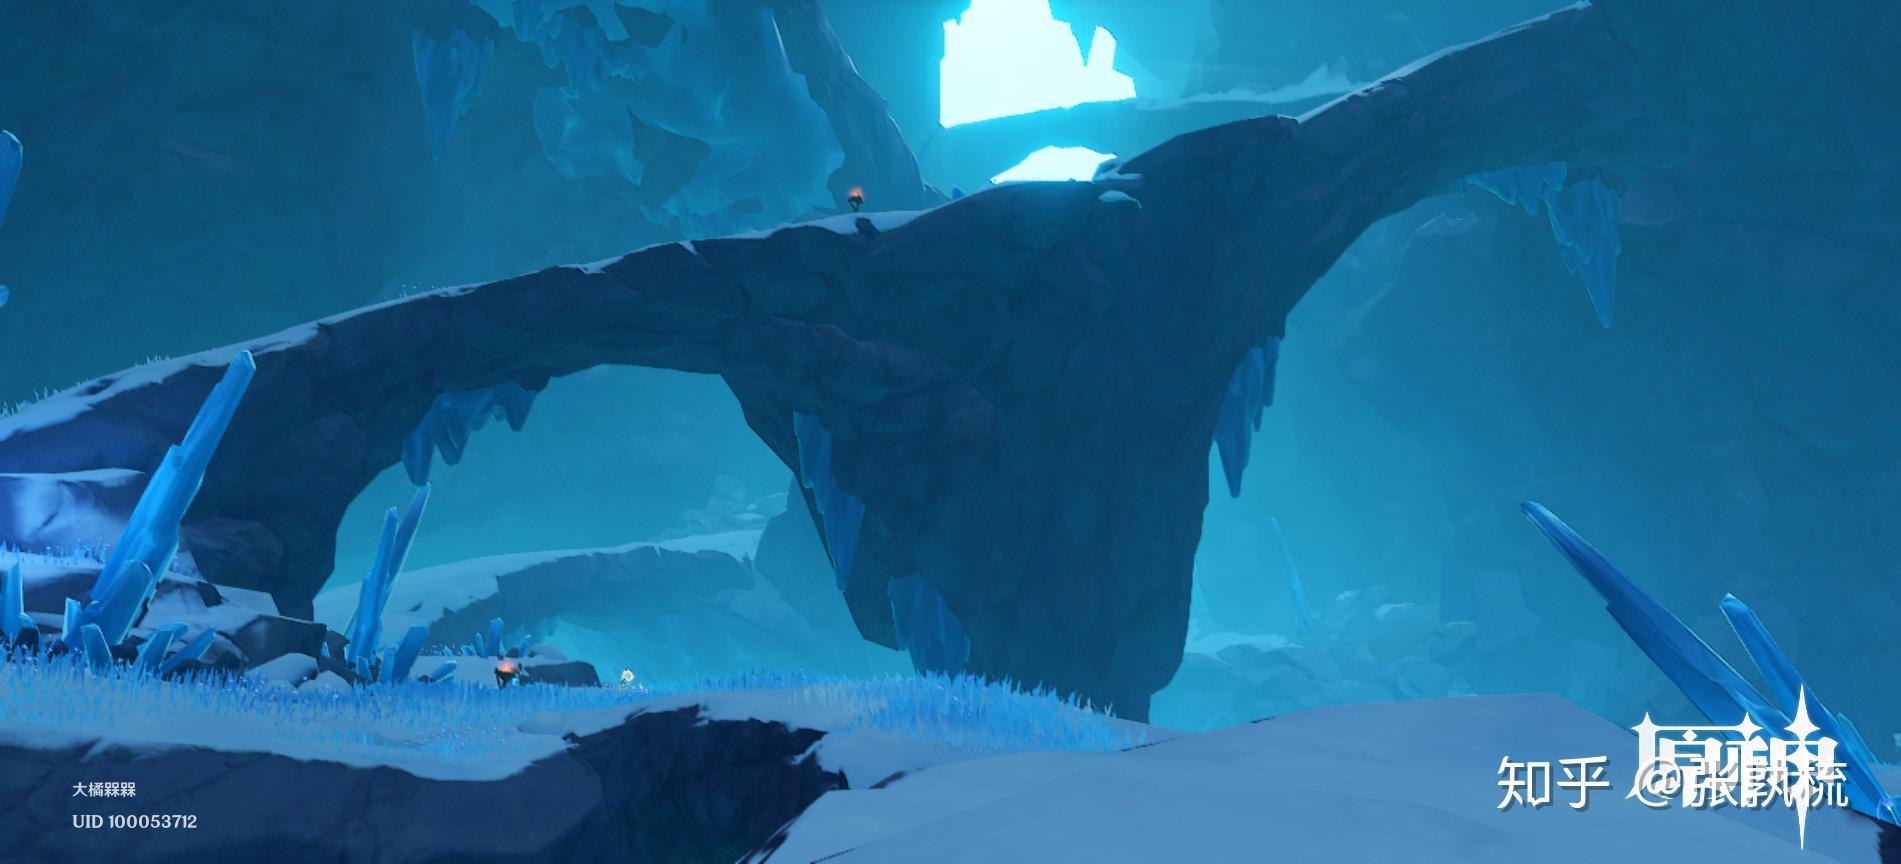 2版本新区域「龙脊雪山」的游戏设计水平?